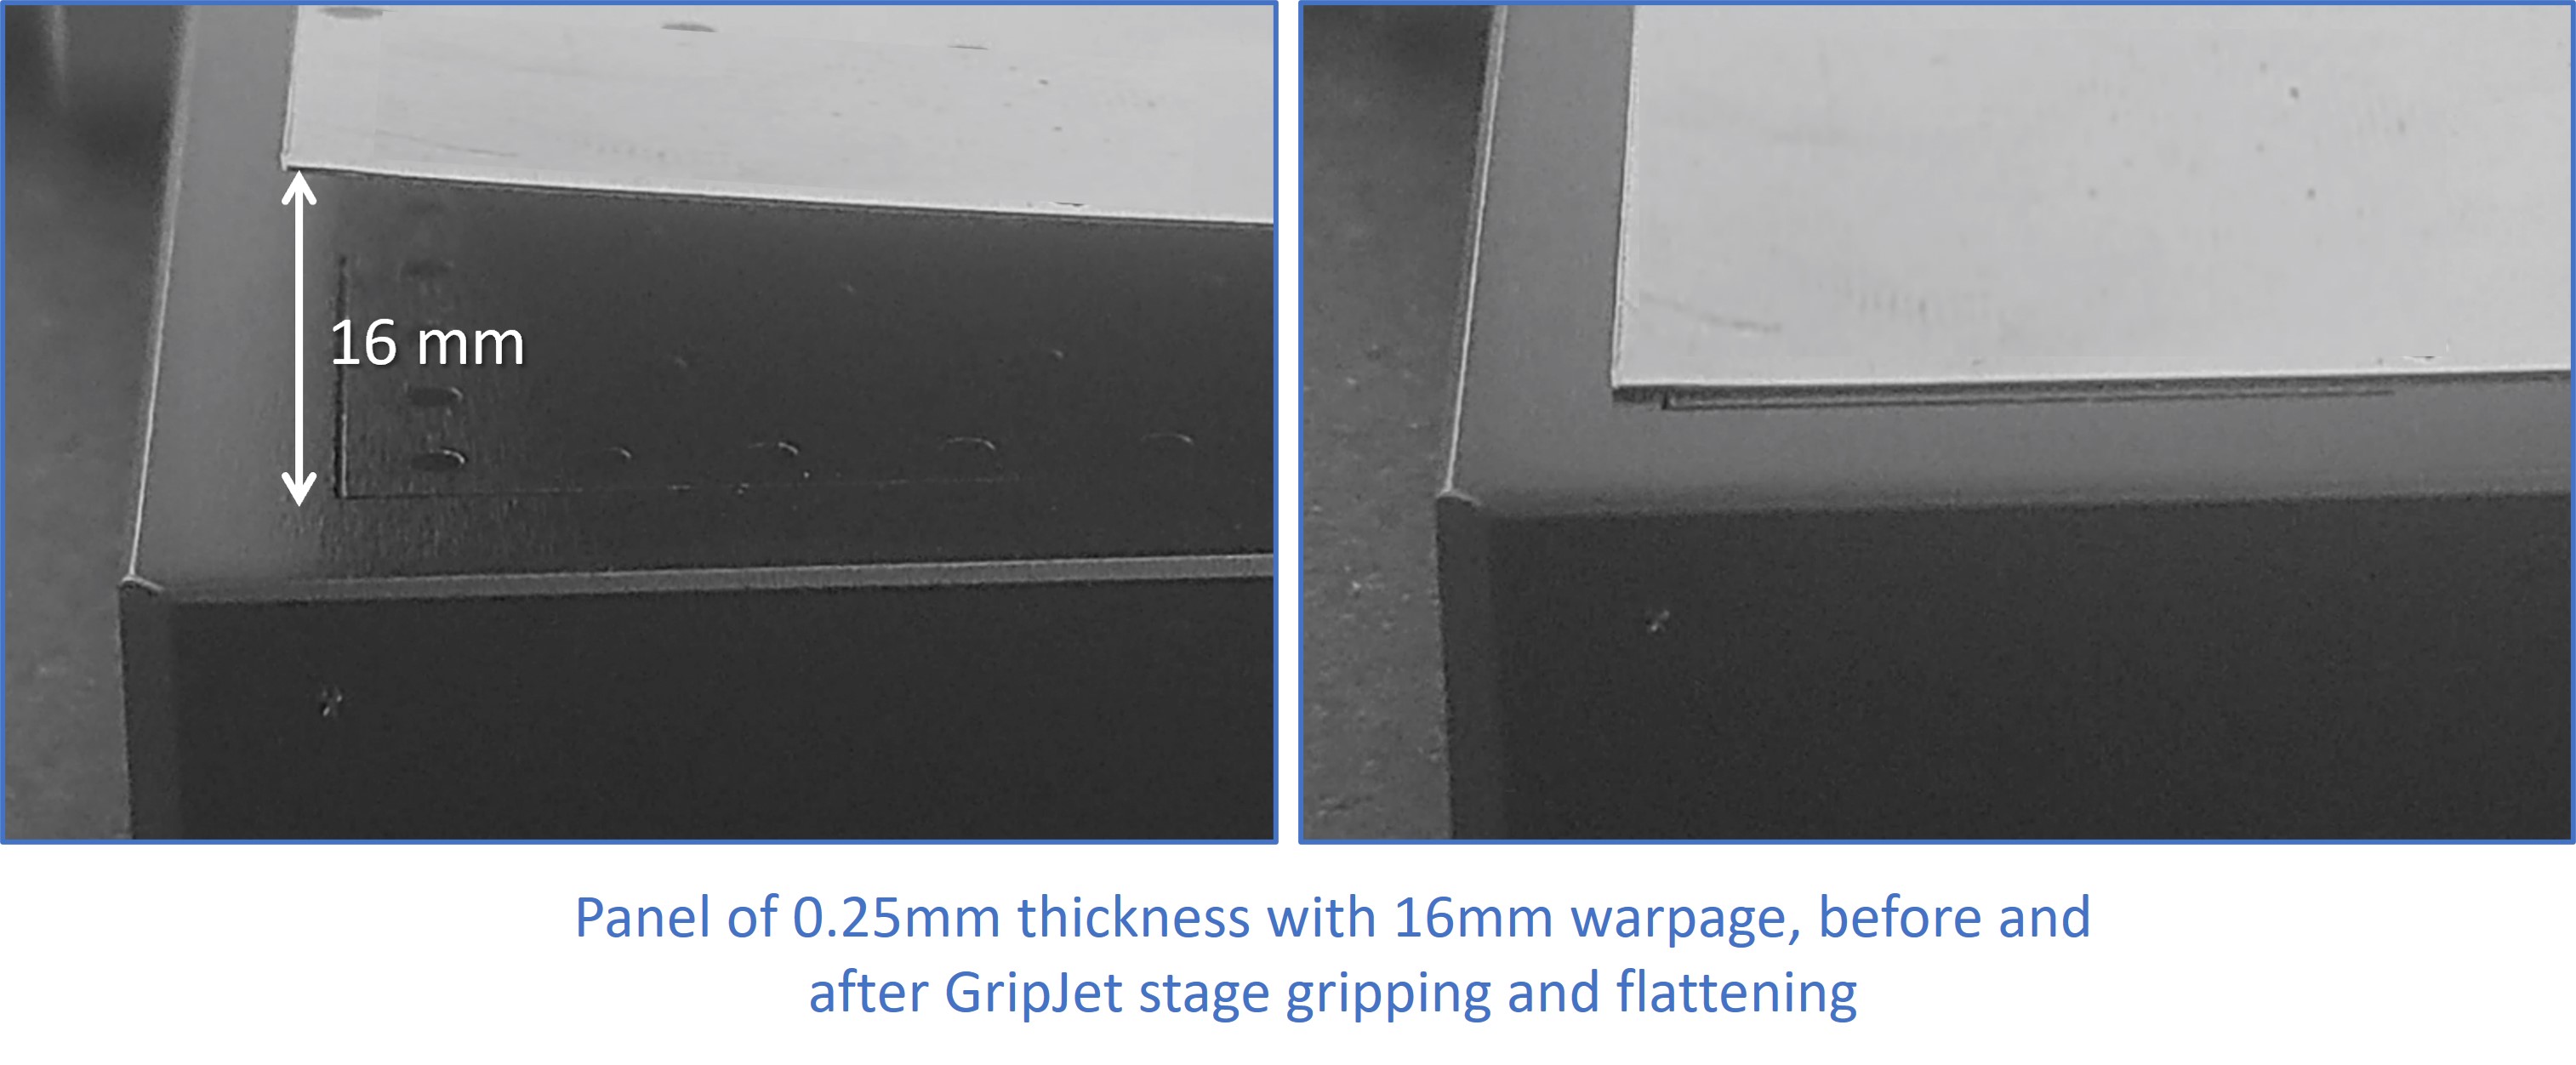 GripJet Stage with 16mm warpe